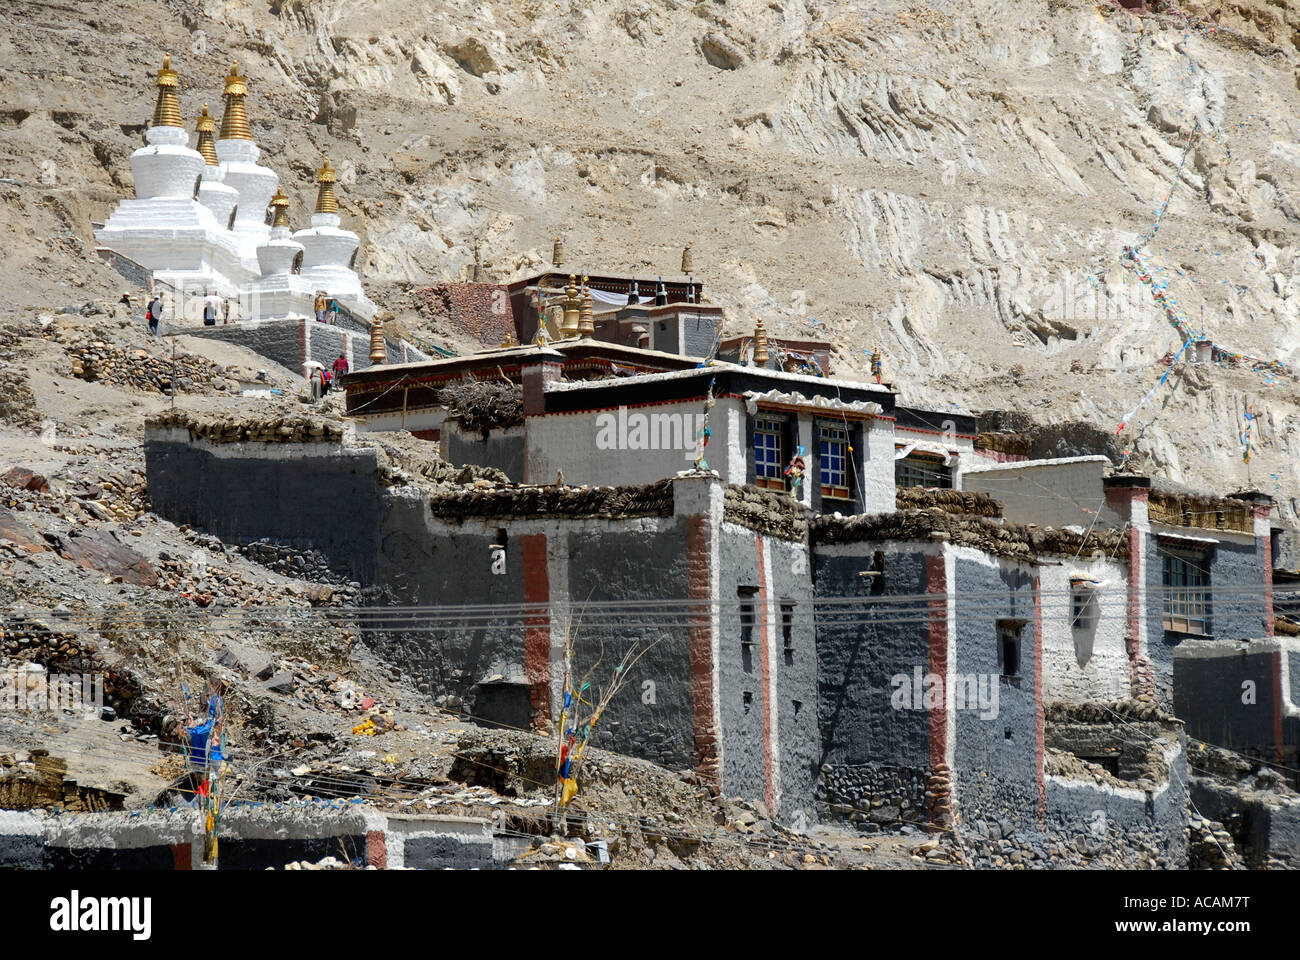 Le bouddhisme tibétain bâtiment administratif Schönberg-est côté avec des maisons privées en gris et rouge foncé des murs peints Monastère Sakya Tibet Chine Banque D'Images